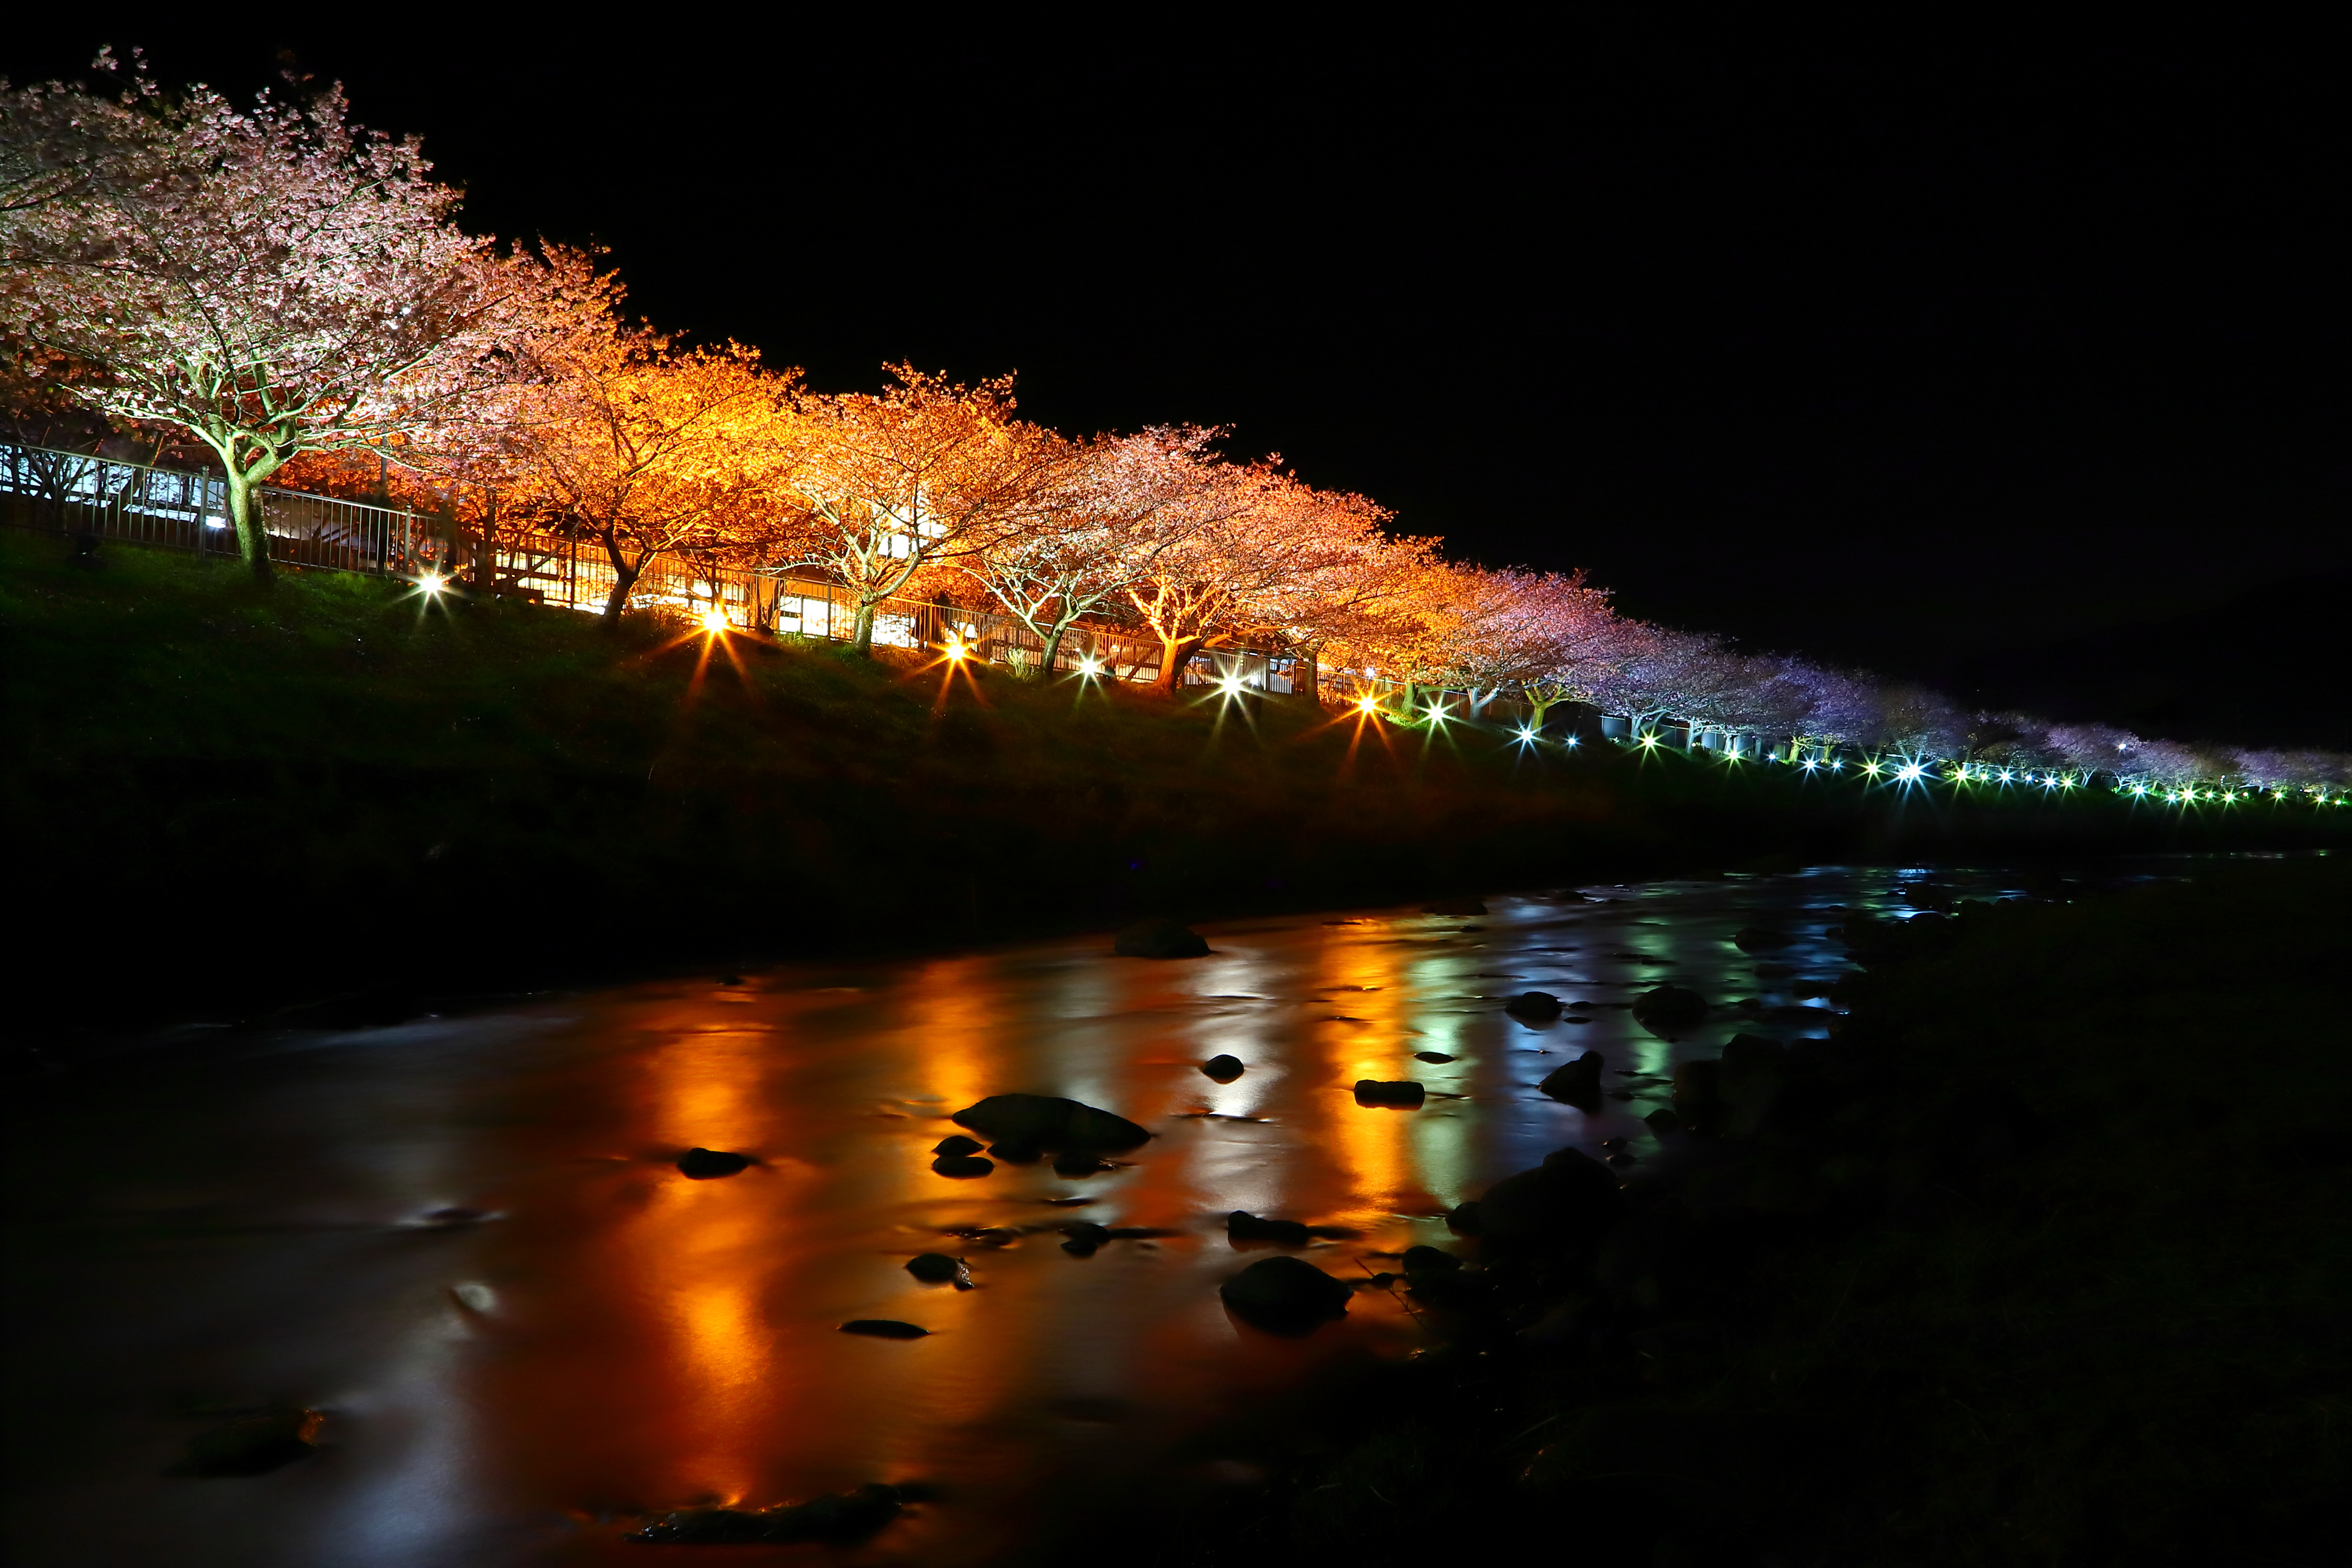 『靜岡。伊豆』 日本最早開的櫻花 「河津櫻花祭」｜2020年2月10日到3月10日舉行  賞粉紅色櫻花隧道 採草莓  海邊聽潮觀景賞月光